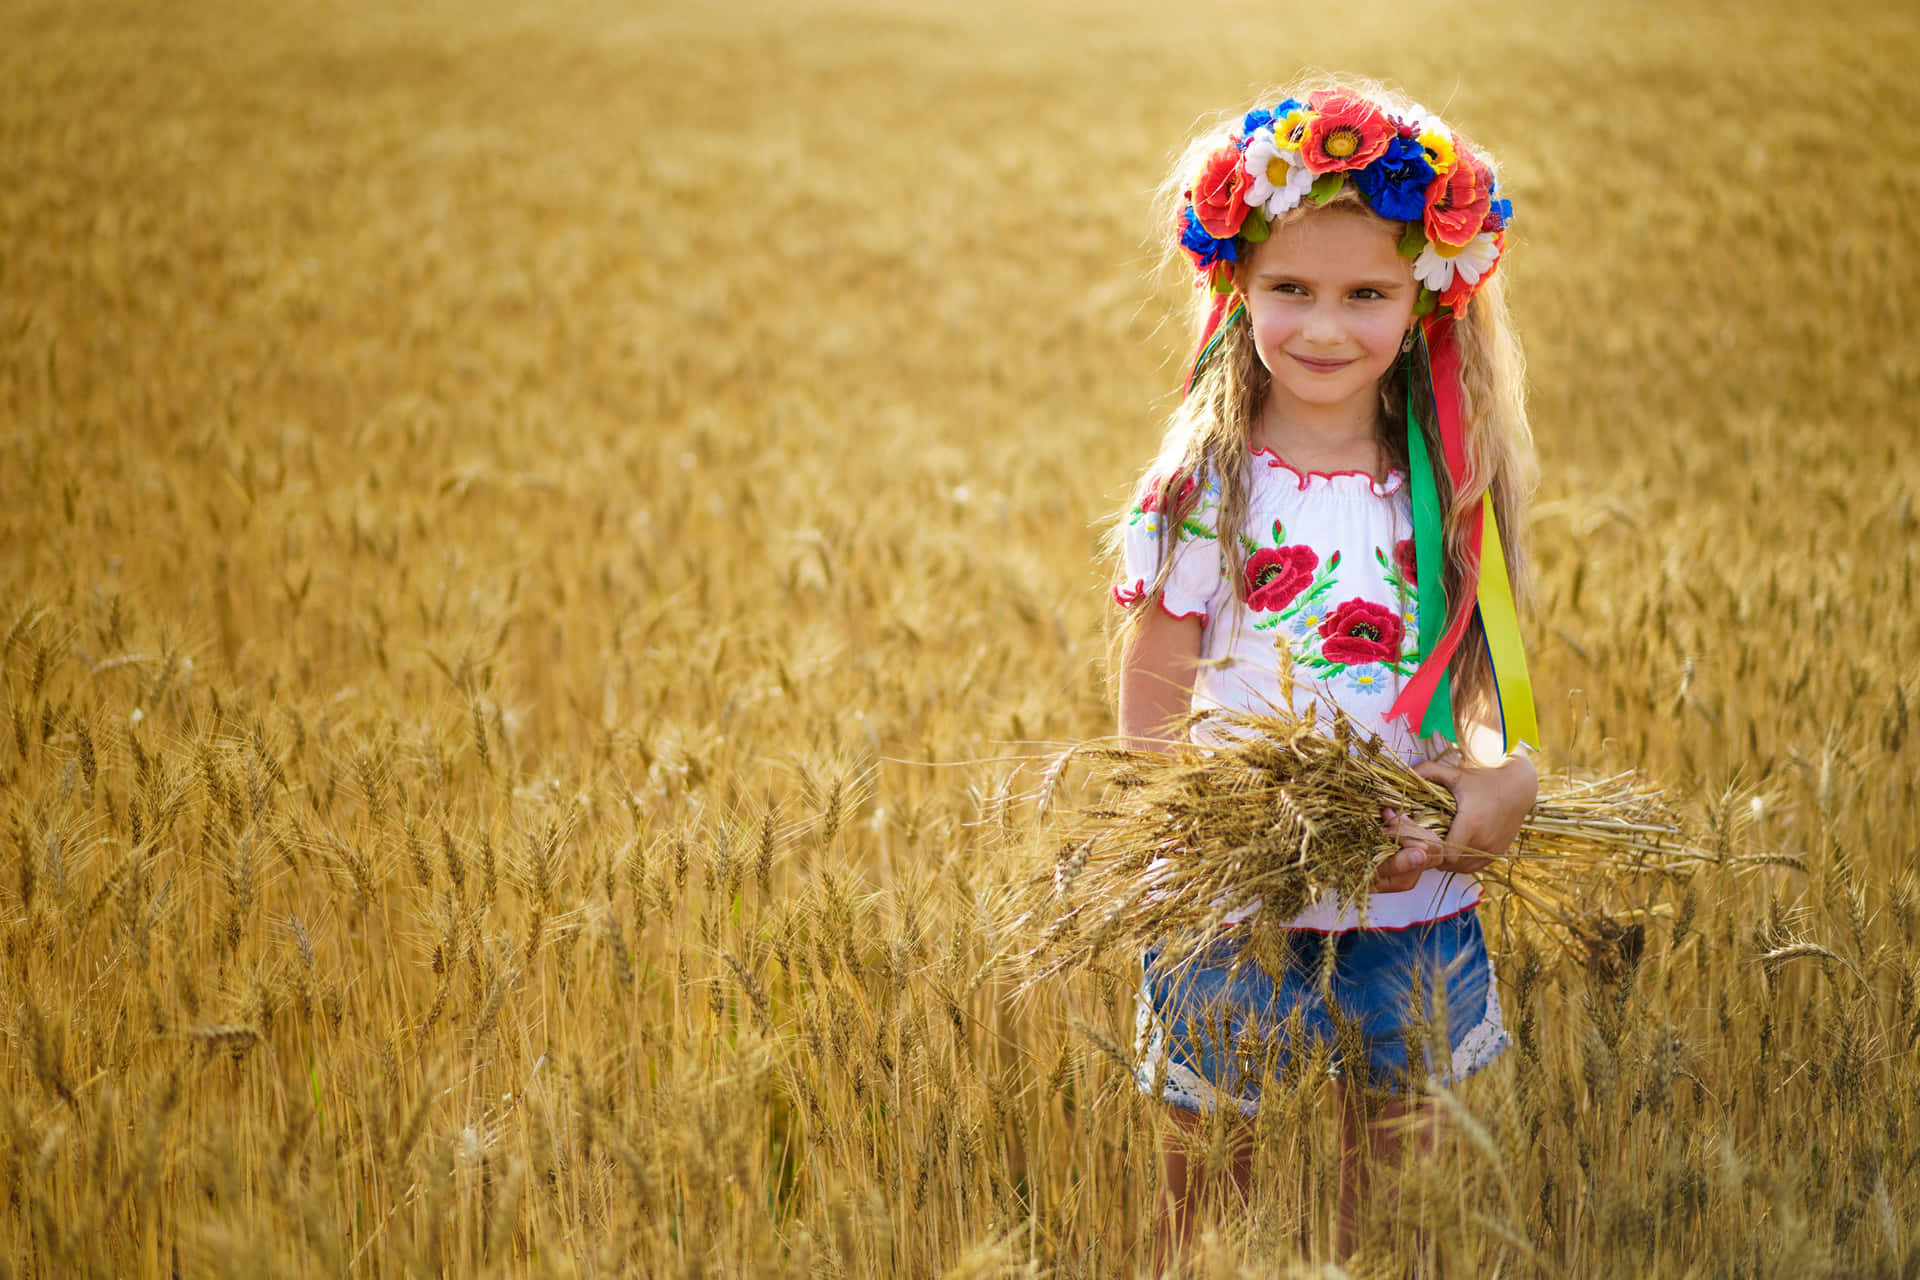 Ukrainian Girl Flower Crown Wheat Field Wallpaper